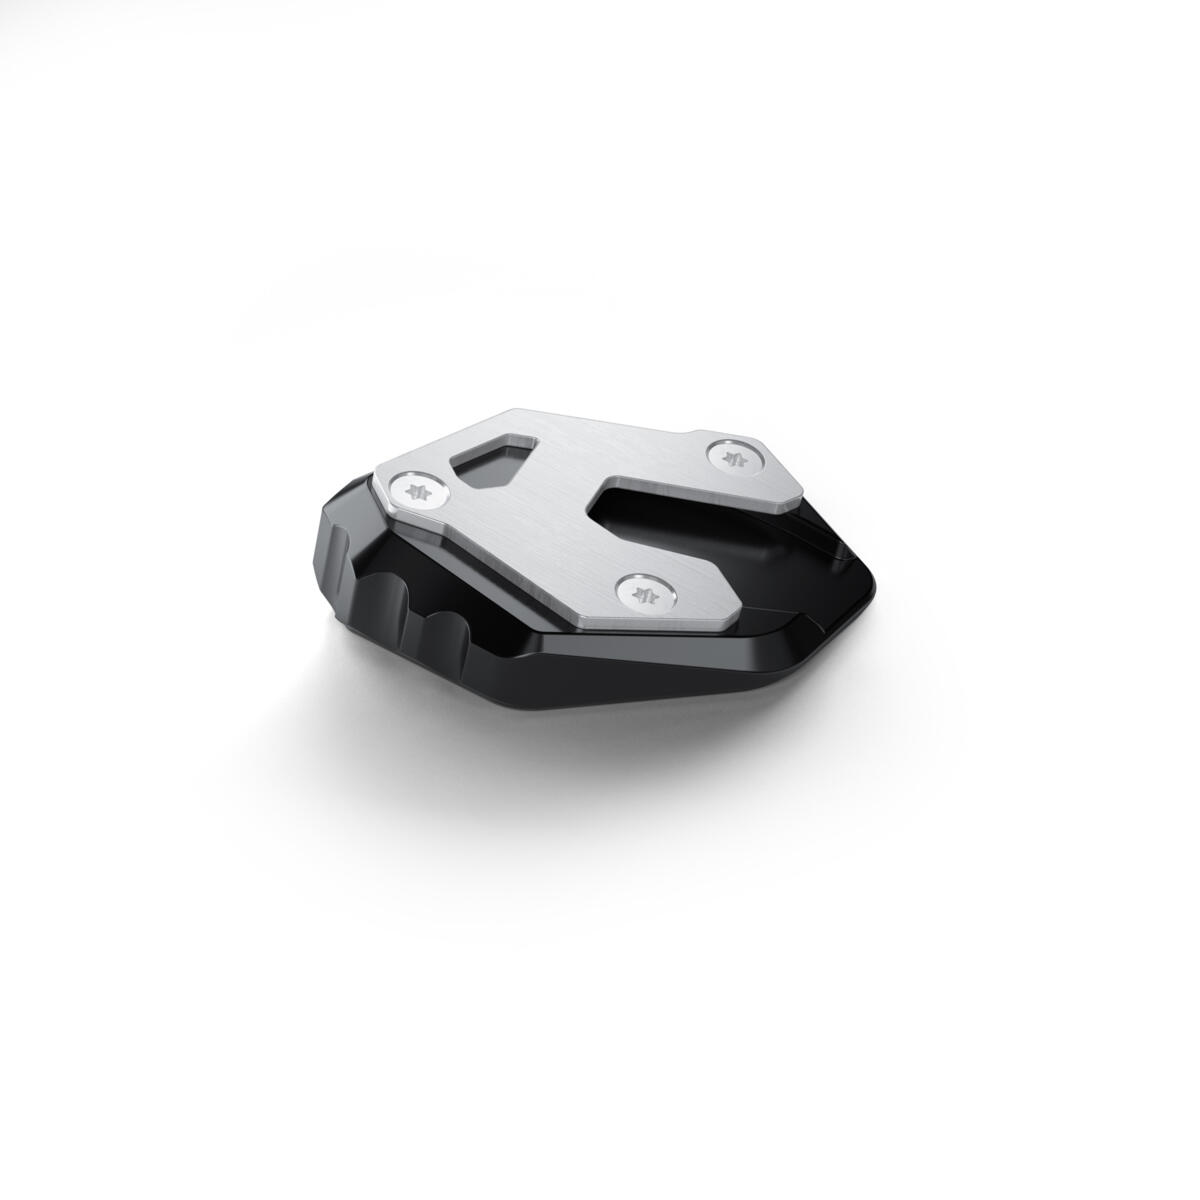 L’équipement de voyage par excellence pour prendre la route avec ta TRACER 9 en toute sérénité. La bulle haute, la bulle additionnelle, les poignées chauffantes et la selle chauffante confort offrent un confort supplémentaire pour les longues routes interminables. Le Top Case est l’outil idéal pour transporter tes effets personnels lors de tes déplacements en complément des sacoches latérales élégantes de la TRACER 9 GT. Recharge facilement ton téléphone avec le chargeur USB tout en gardant un œil sur la pression de tes pneus grâce à l’outil de contrôle de pression des pneus. Le pack comprend également un support GPS dédié qui te permet de fixer ton GPS en toute sécurité. L’extension de béquille latérale donne plus de stabilité à ta moto quelle que soit la surface sur laquelle elle est garée, la protection de radiateur protège ton radiateur des jets de pierres et du gravier qui se trouvent sur ton passage, tandis que la protection du moteur le protège en cas de chute accidentelle. Les feux antibrouillard à LED augmentent la visibilité par mauvais temps pour une sécurité optimale. Pendant que tu profites de ton trajet, nous avons fait en sorte que ton passager soit lui aussi choyé. Il appréciera le confort de la selle passager confort et du dosseret.